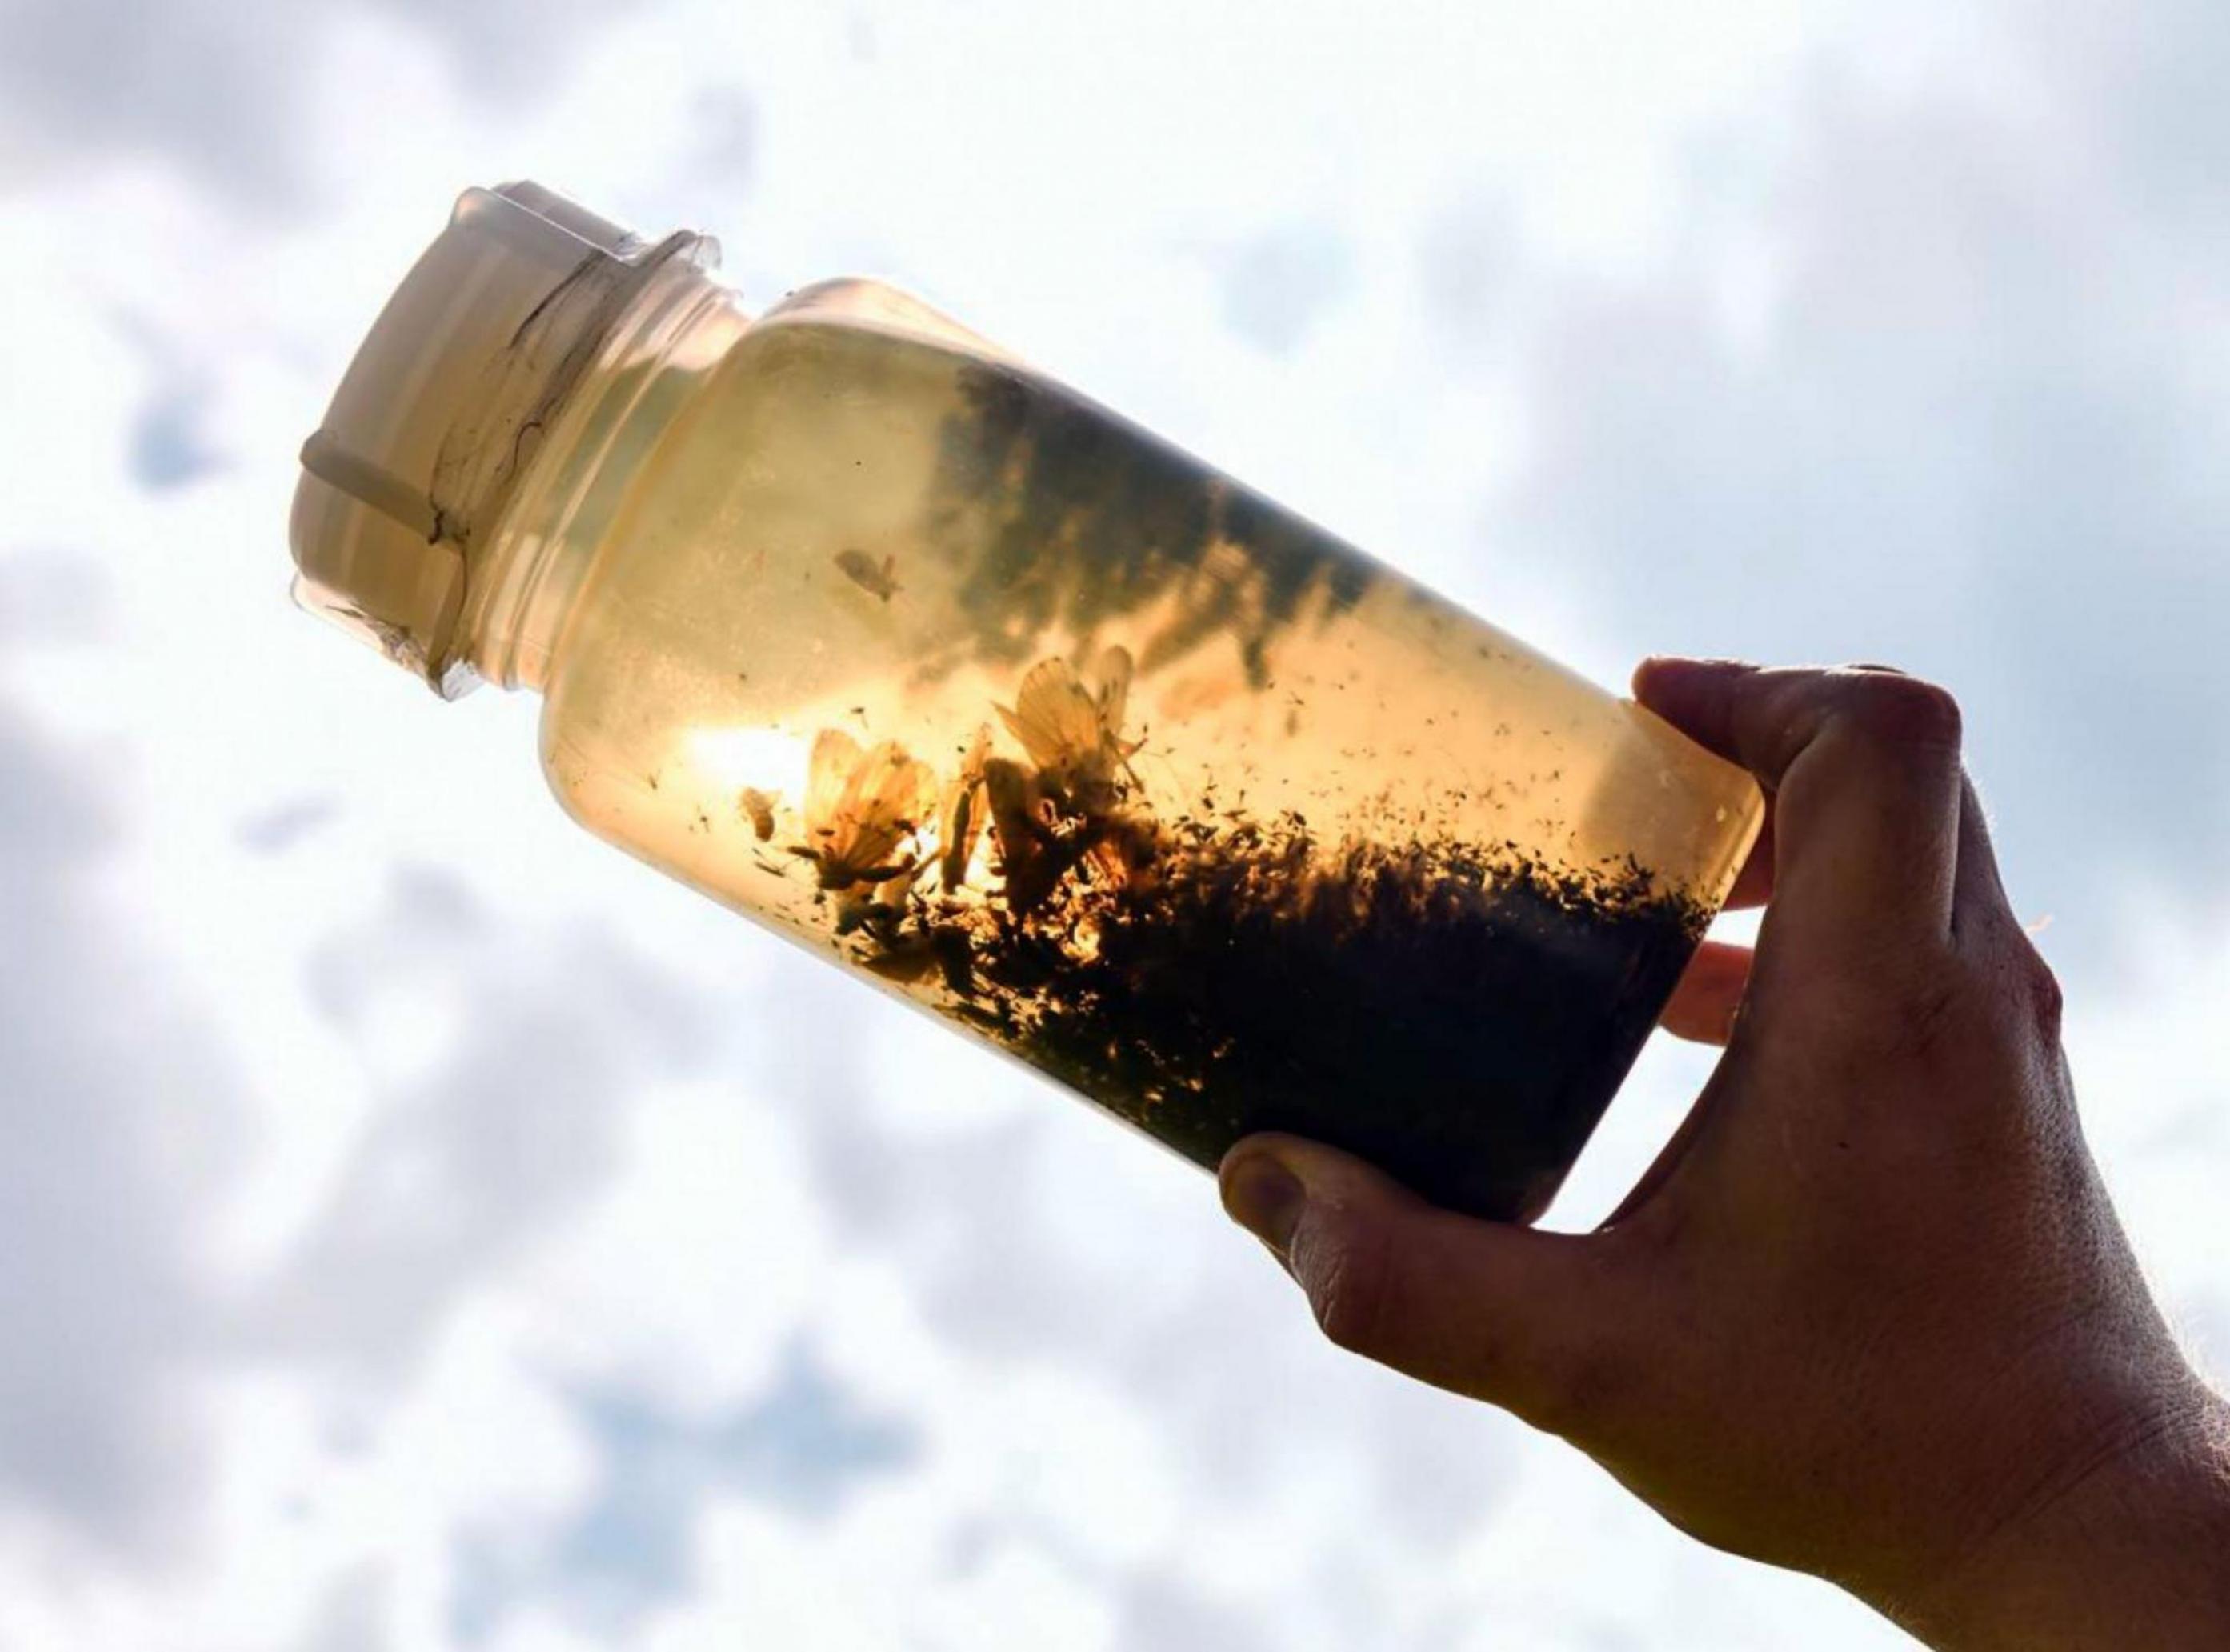 Jemand hält eine Plastikflasche mit einer Flüssigkeit gegen die Sonne. Dunkel zeichnen sich die Silhouetten von Insekten ab.